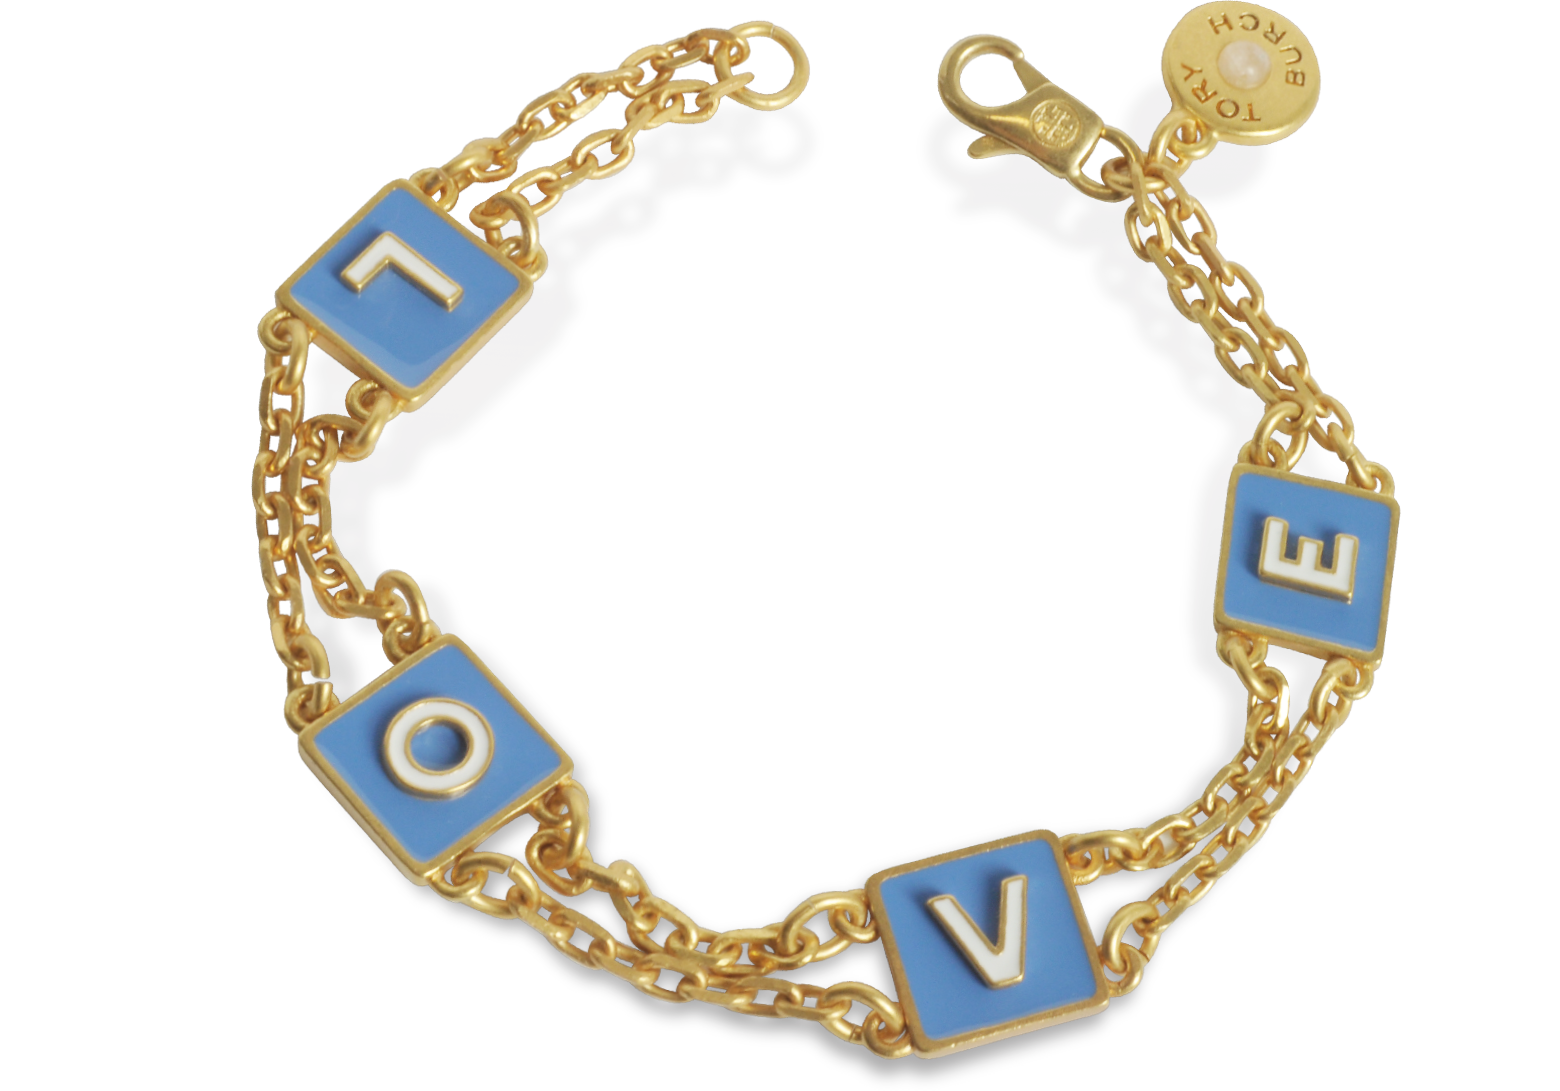 Louis Vuitton Vintage Blue Crystal & Goldtone Gamble Bracelet